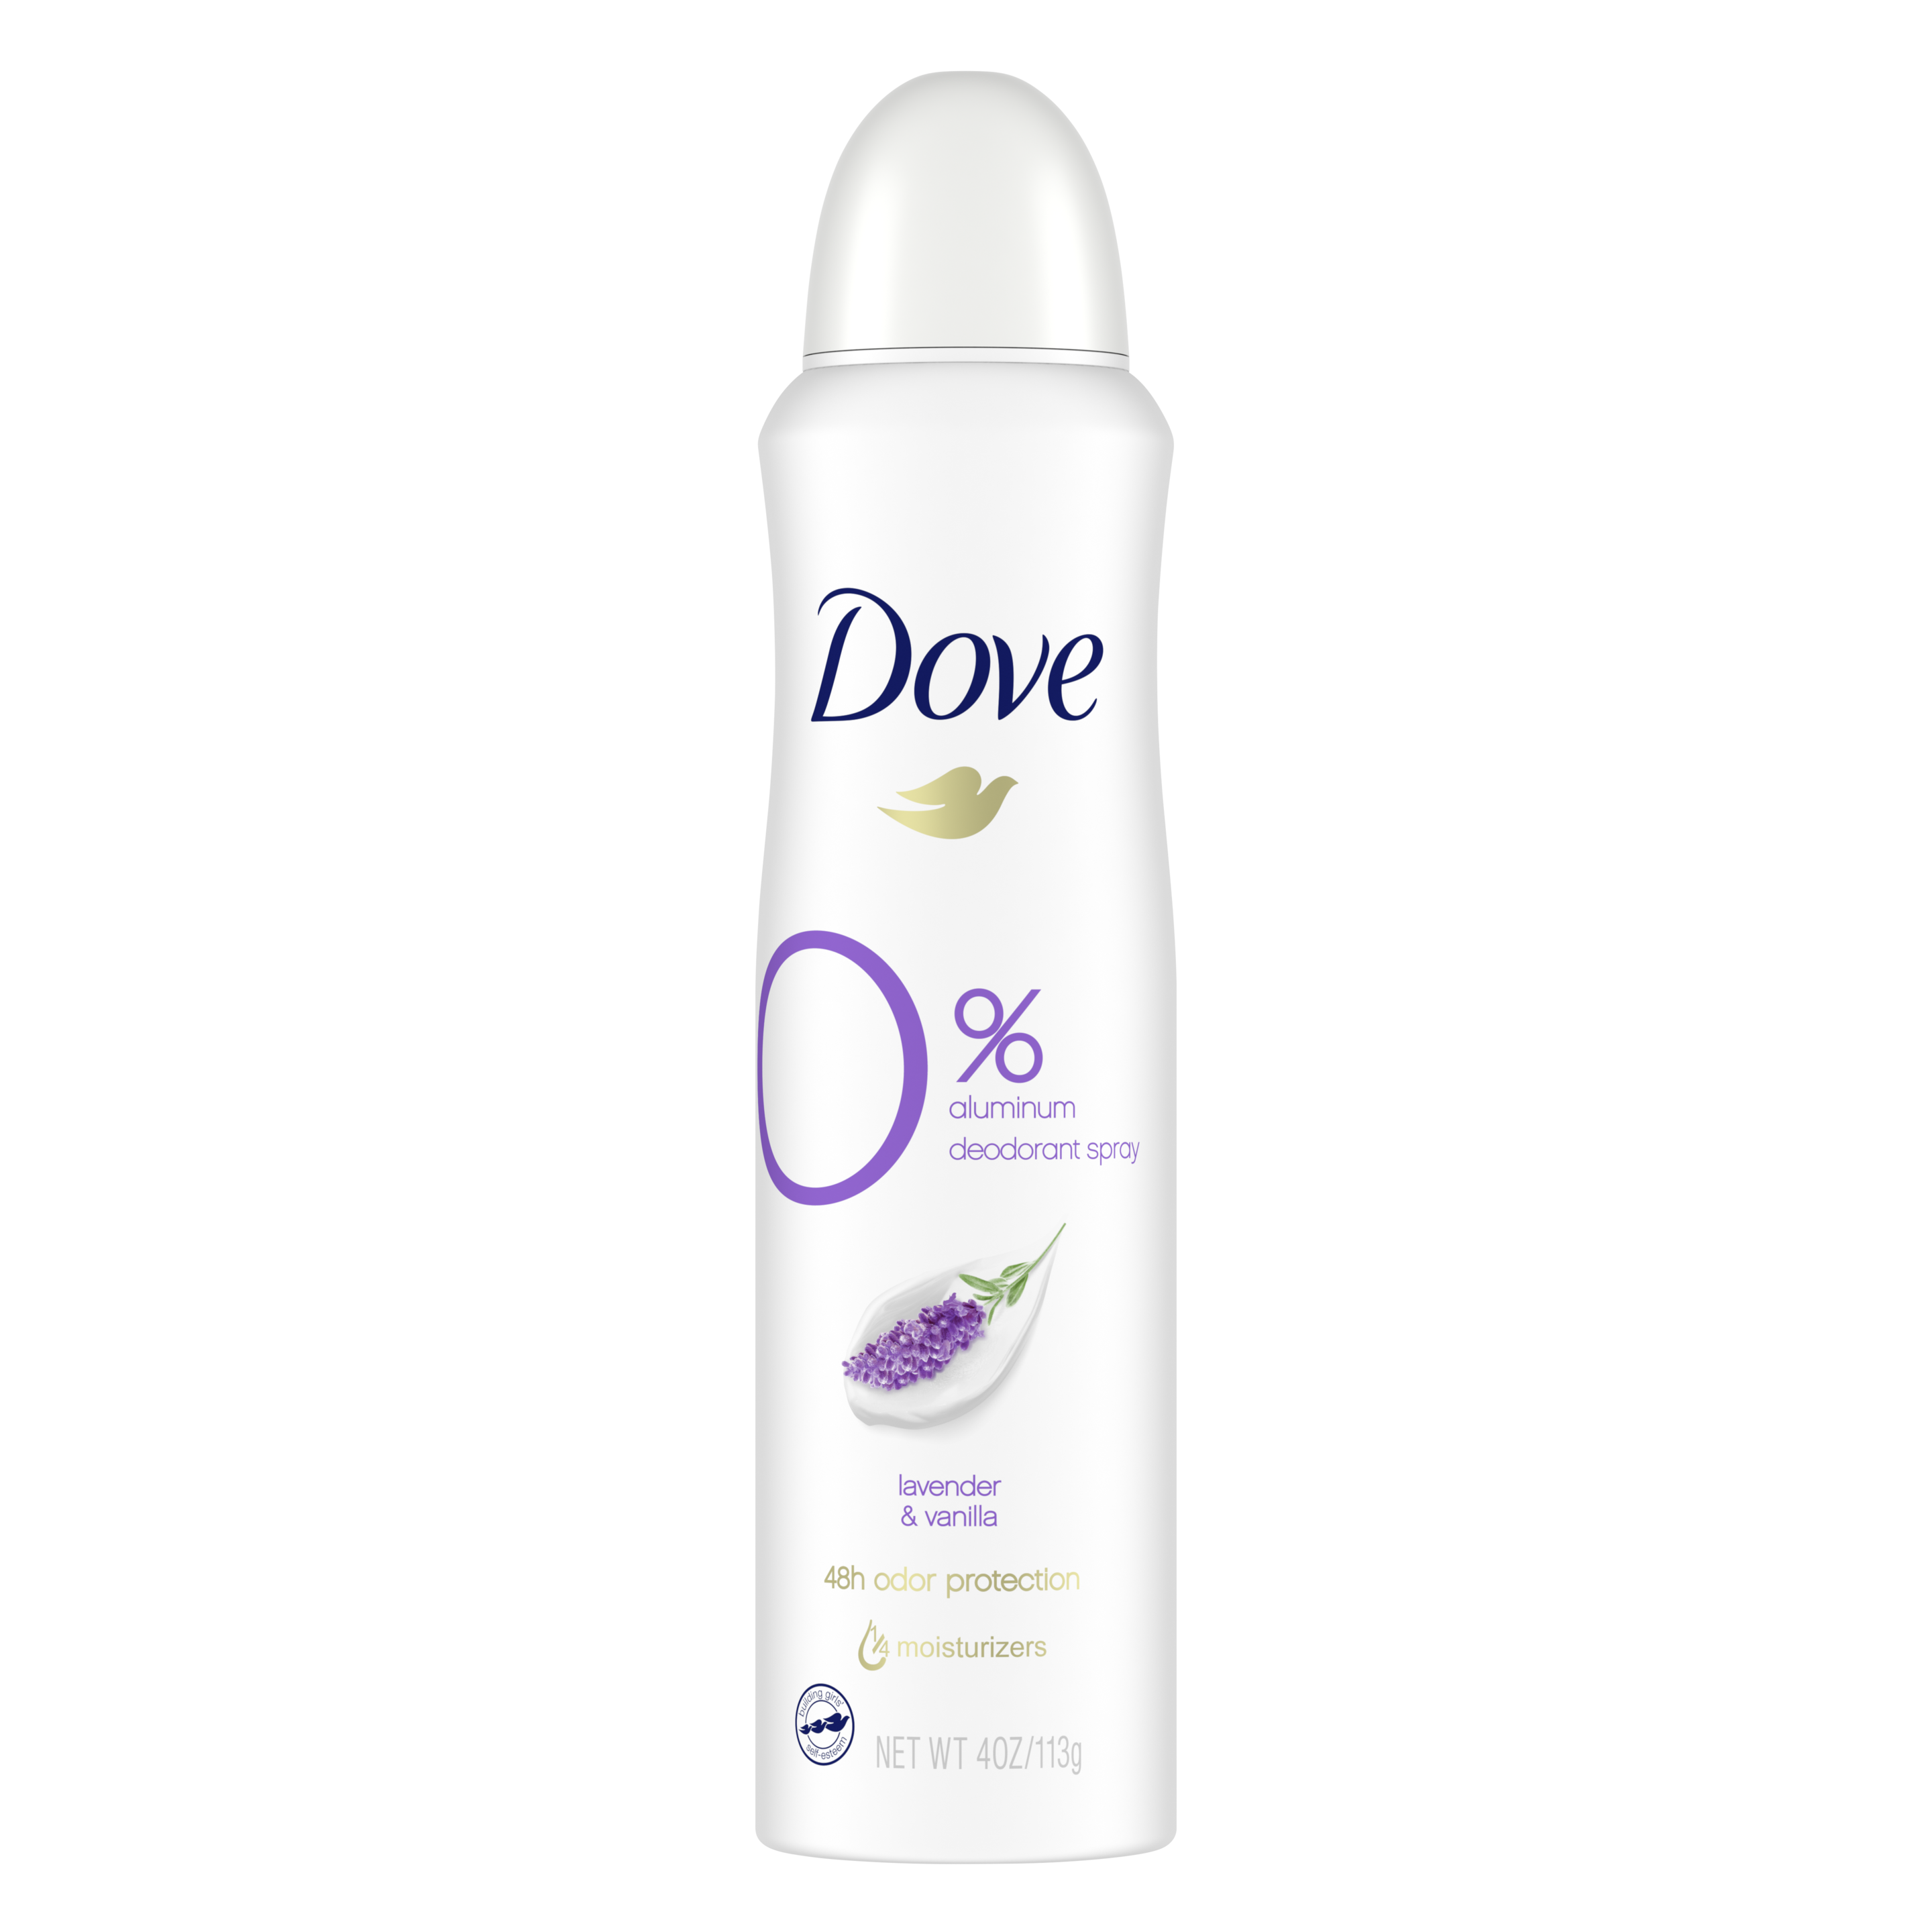 Dove 0% Aluminum Deodorant Spray Lavender & Vanilla